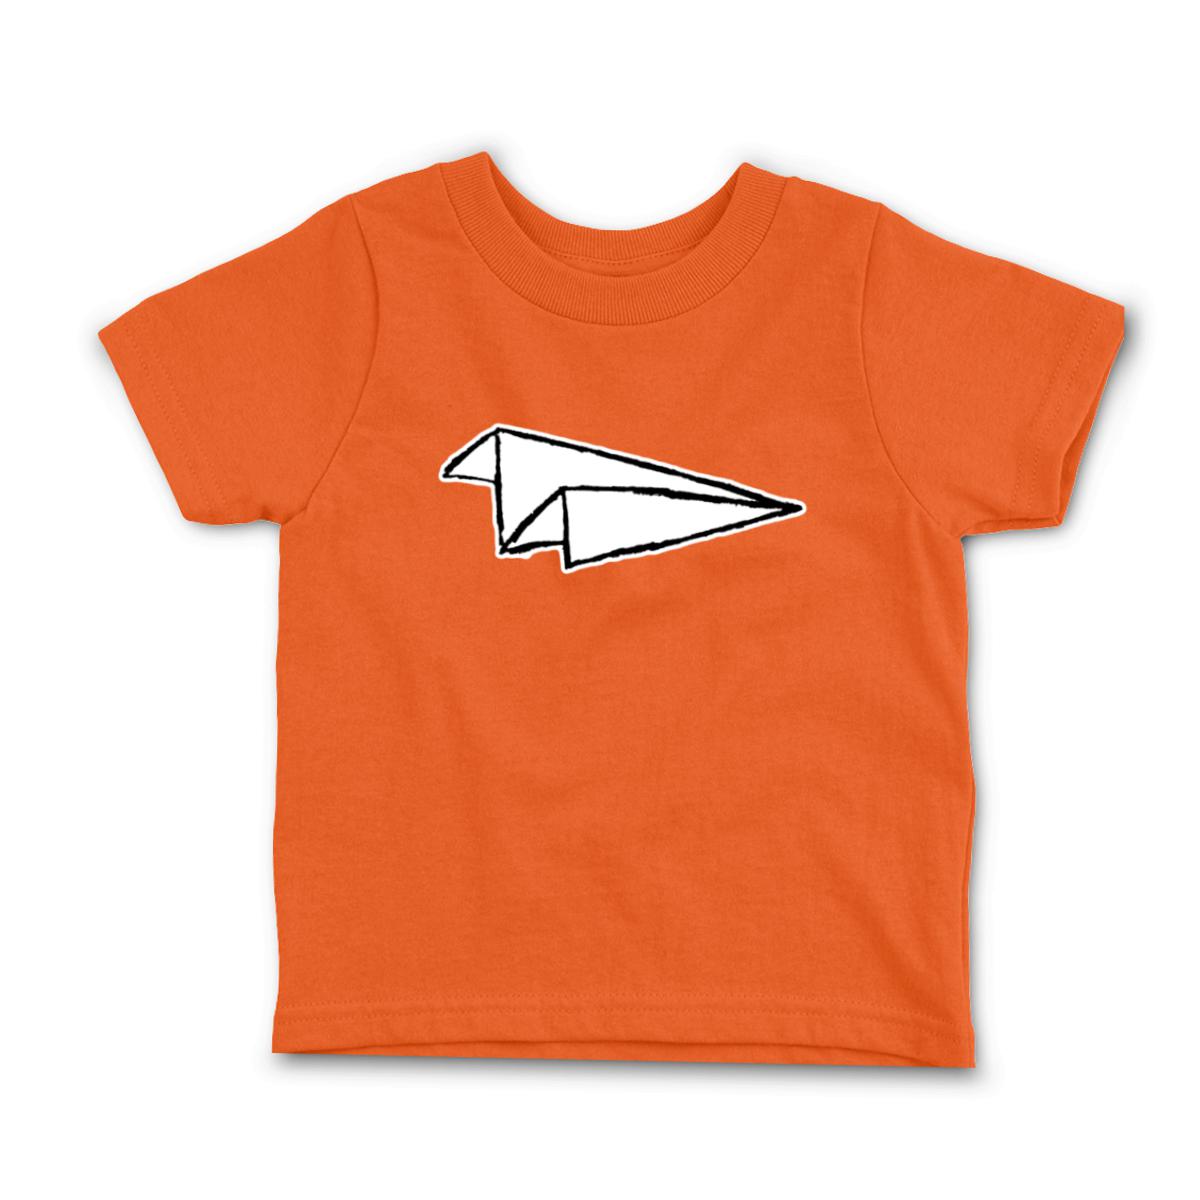 Airplane Sketch Toddler Tee 4T orange